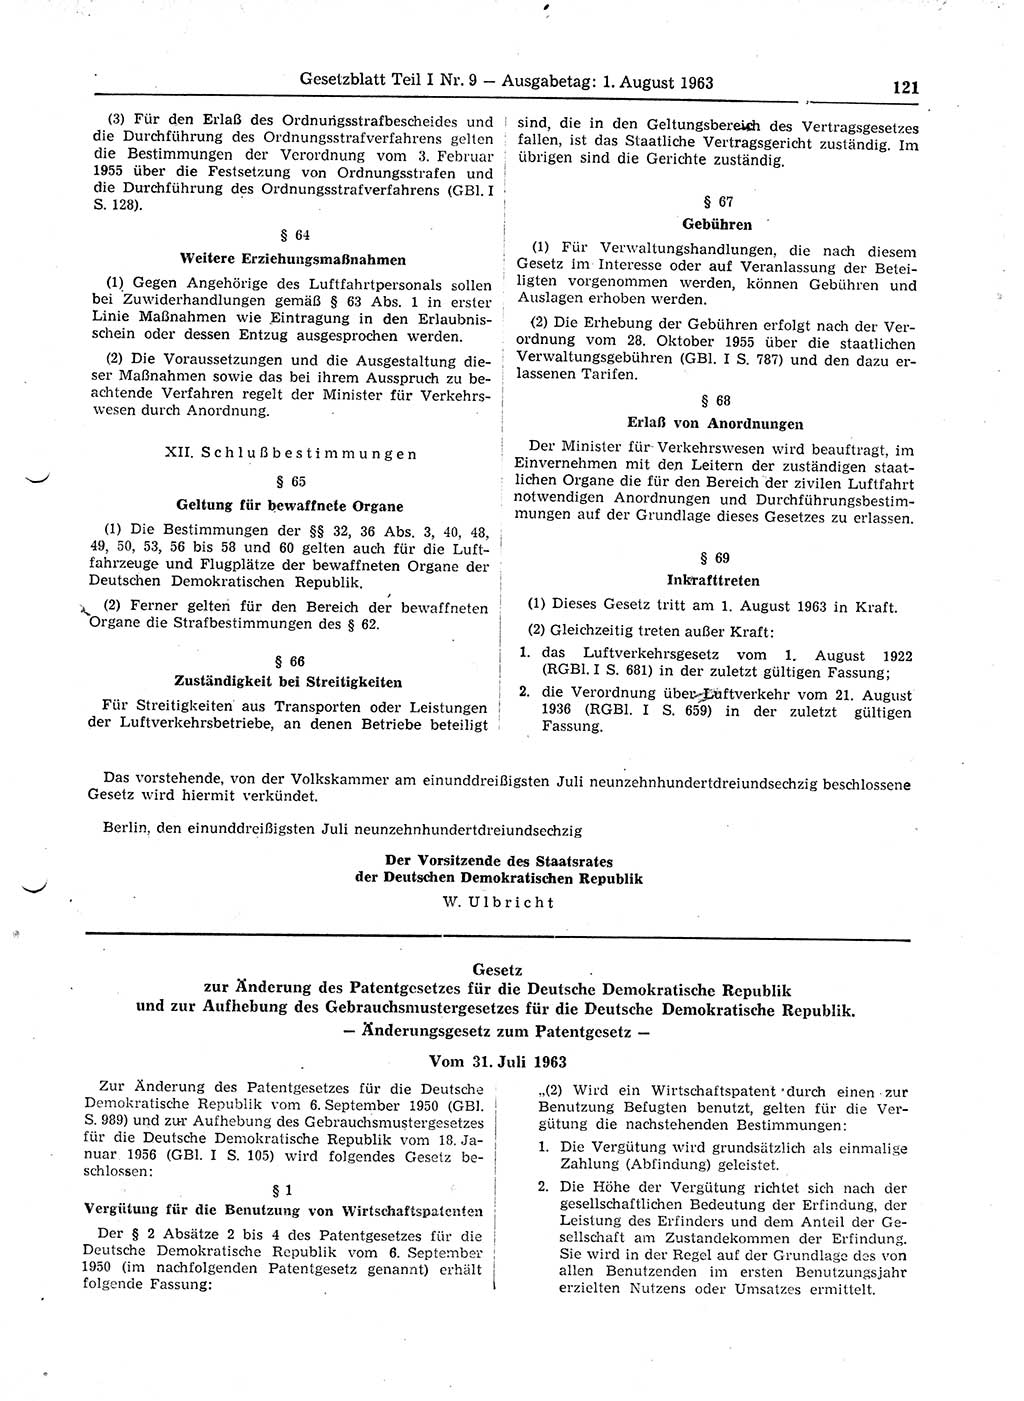 Gesetzblatt (GBl.) der Deutschen Demokratischen Republik (DDR) Teil Ⅰ 1963, Seite 121 (GBl. DDR Ⅰ 1963, S. 121)